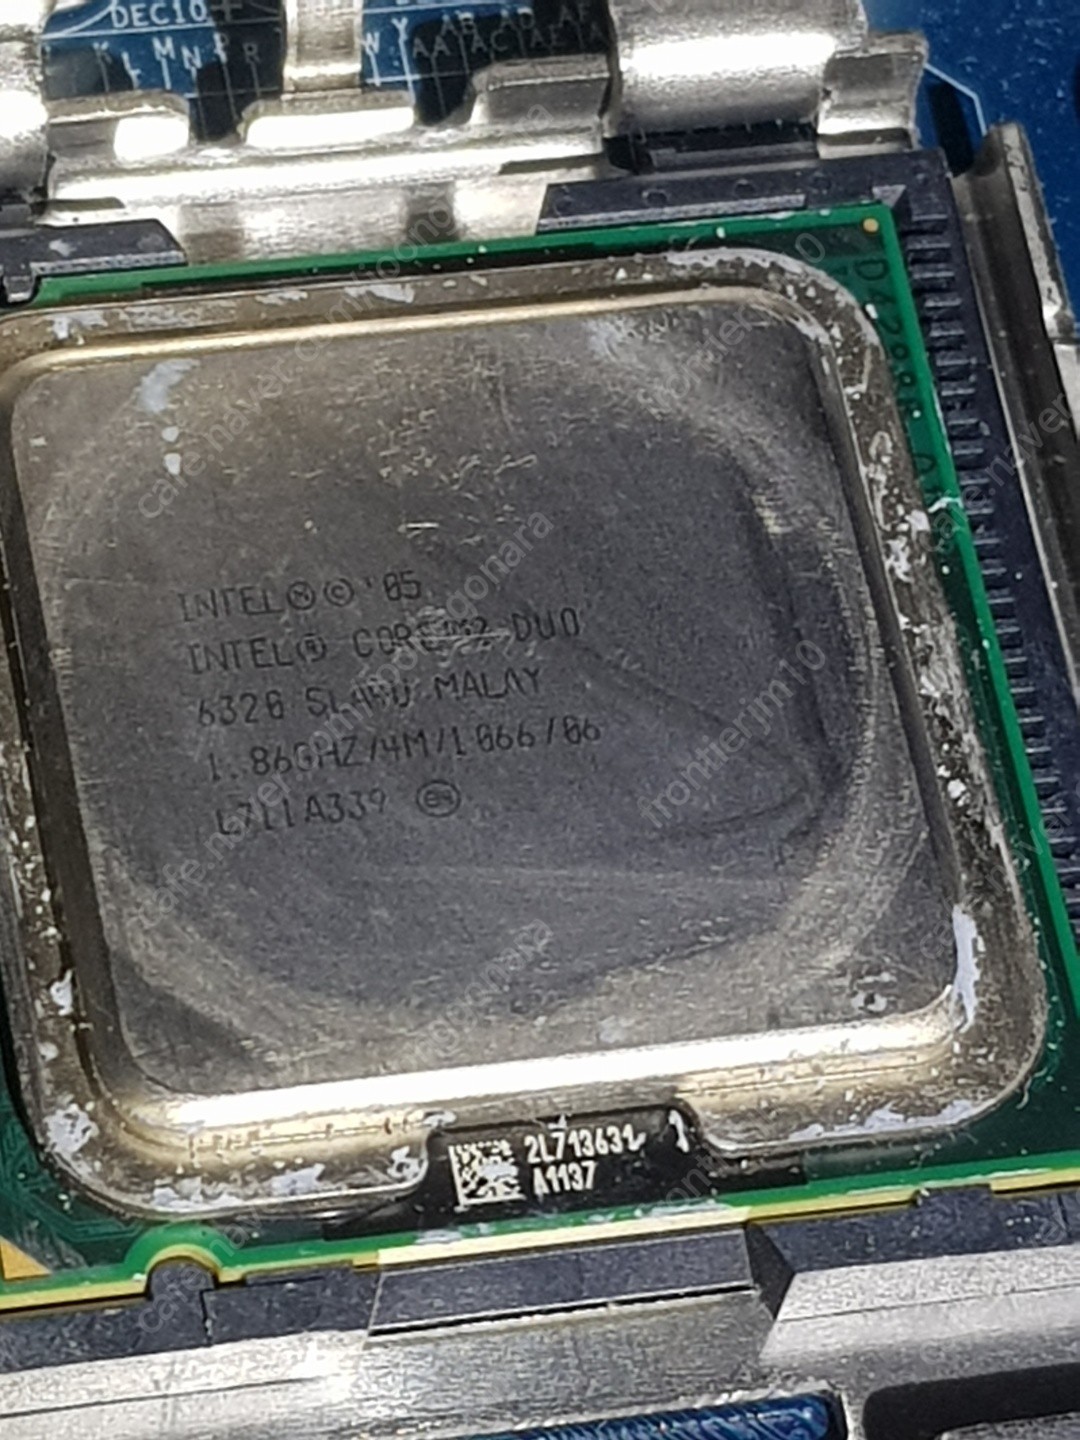 컴퓨터 부품 일괄 60,000원에 판매 합니다. (키보드(ANYZEN KM 6000U SECPU,박스포함) + 잘만 쿨러 + DDR2 1G (2개), 2G(1개) + 그래픽카드